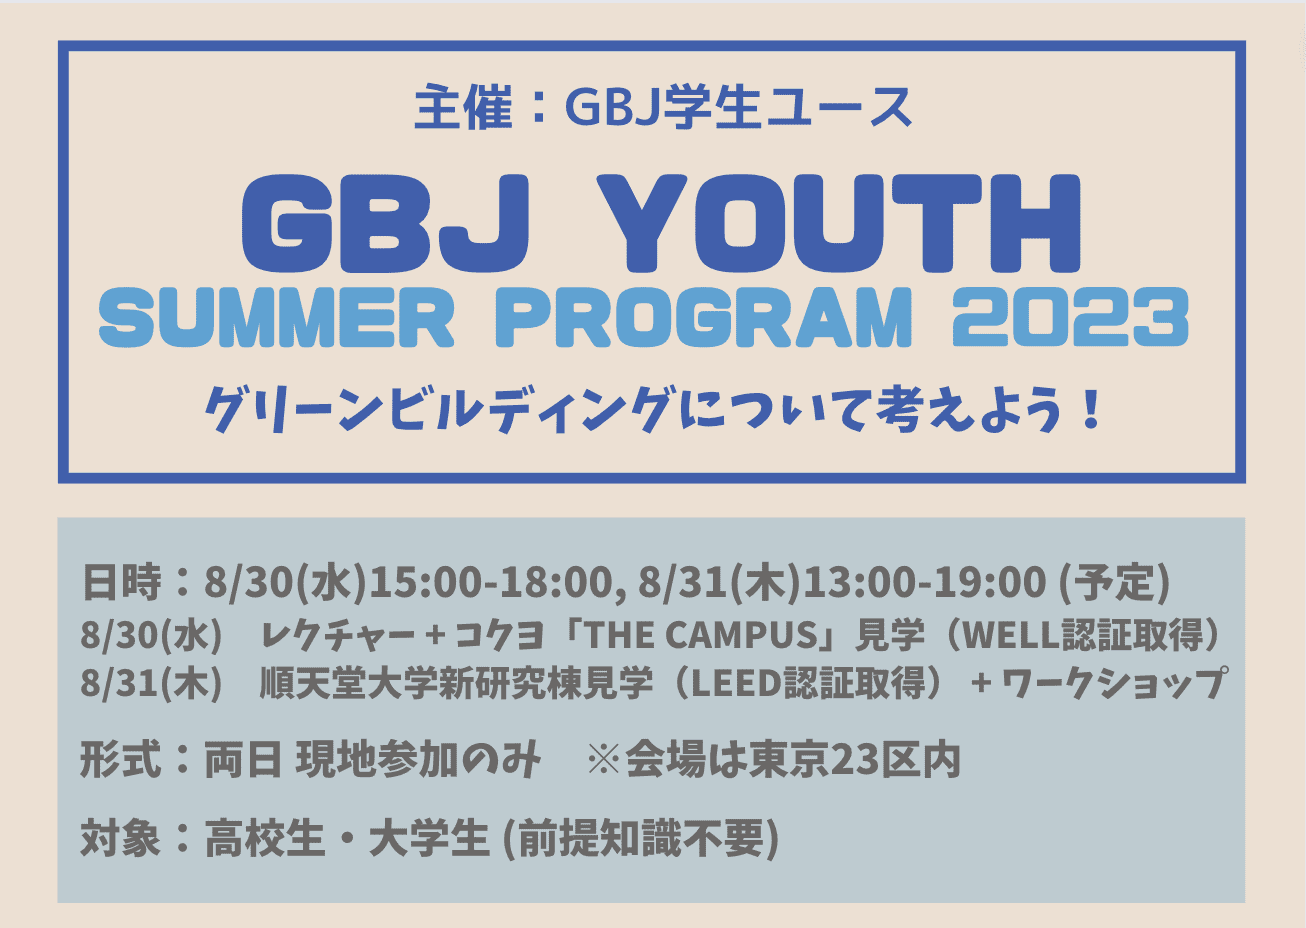 【高校生対象】GBJ Youth Summer Program 2023「グリーンビルディングを知り、体験しよう」inコクヨ「THE CAMPUS」・順天堂大学